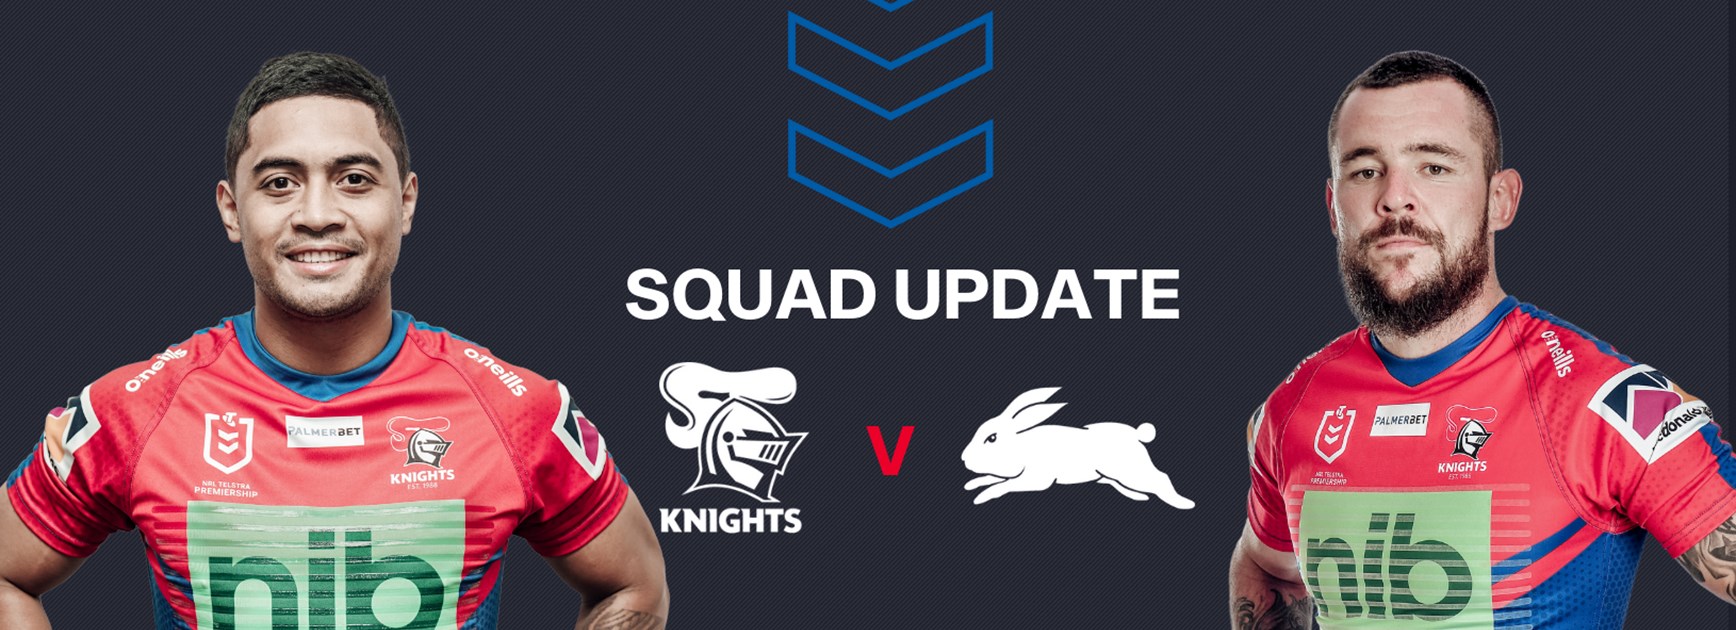 Squad Update: Team reduced ahead of Rabbitohs clash